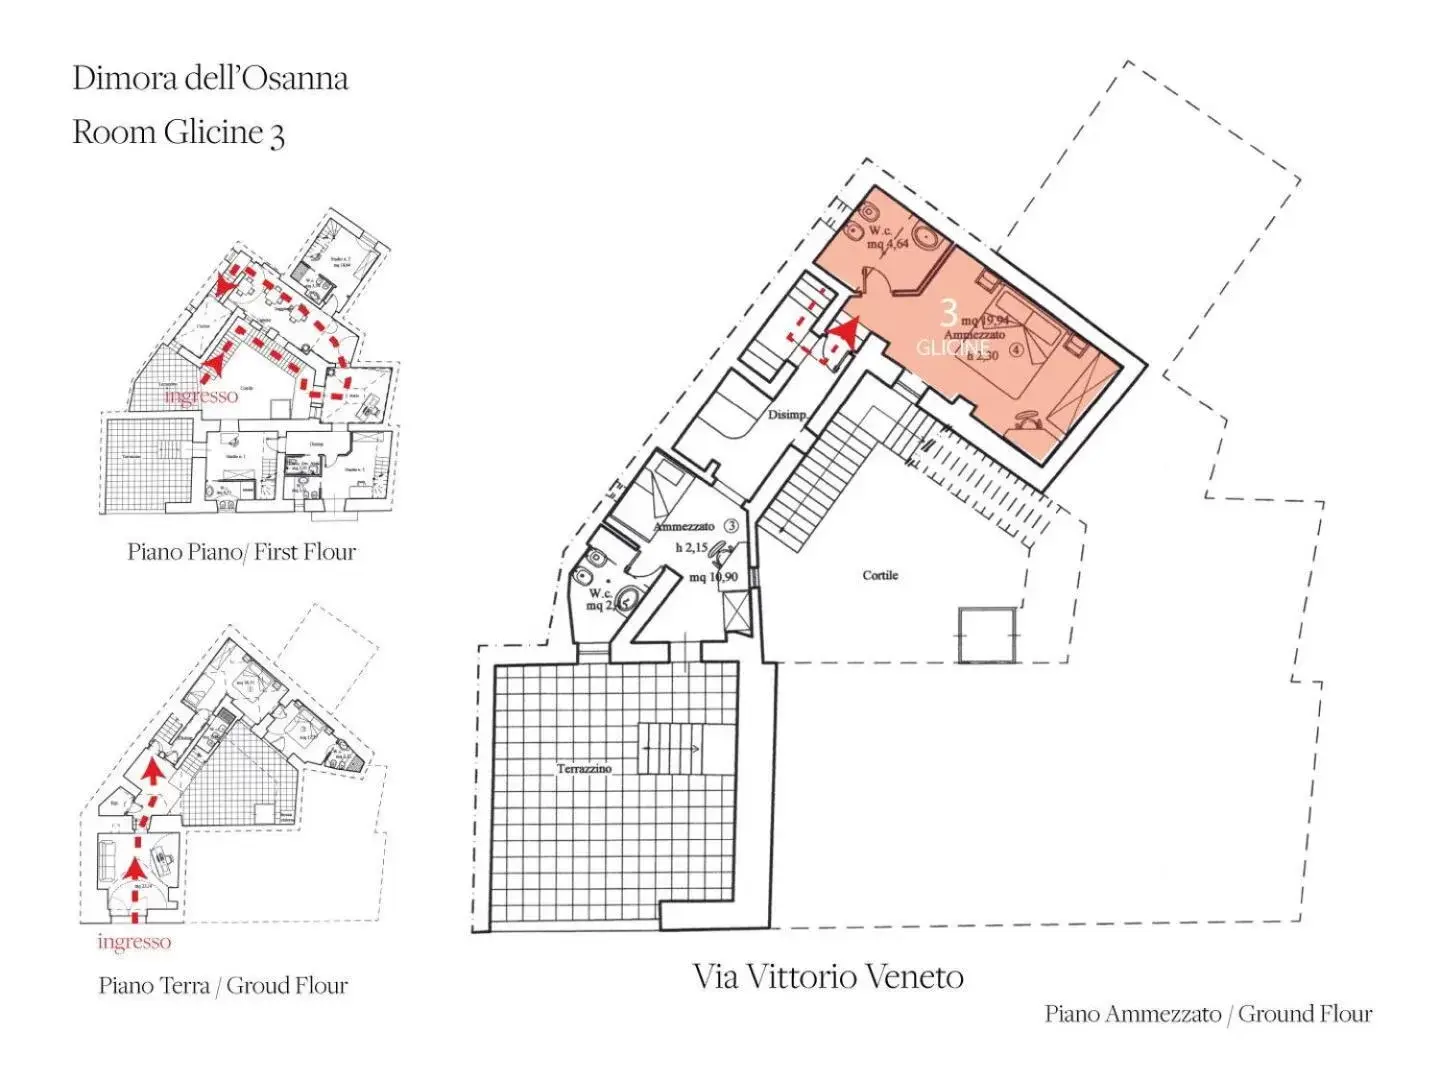 Floor Plan in Dimora Dell'Osanna Raro Villas Smart Rooms Collection